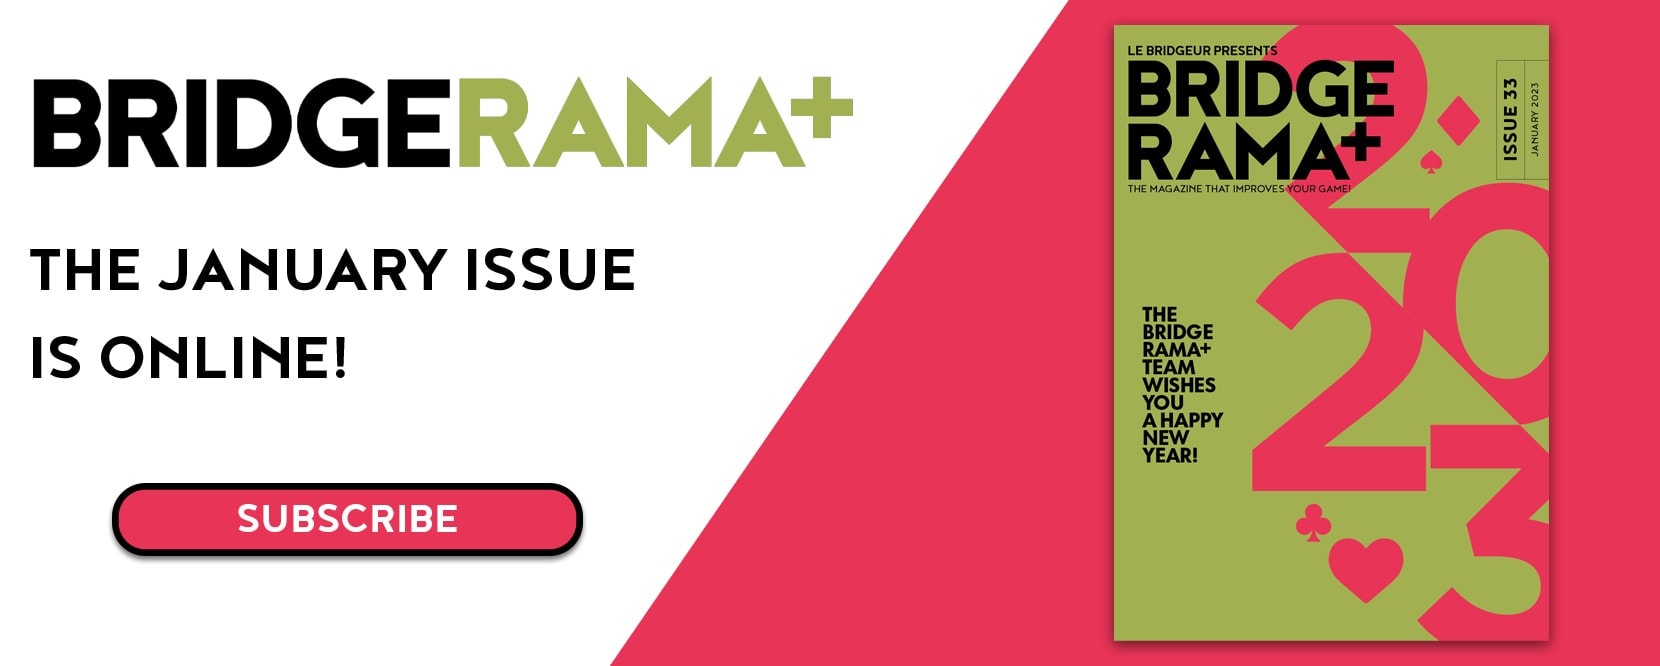 BRIDGERAMA+ Bridge magazine